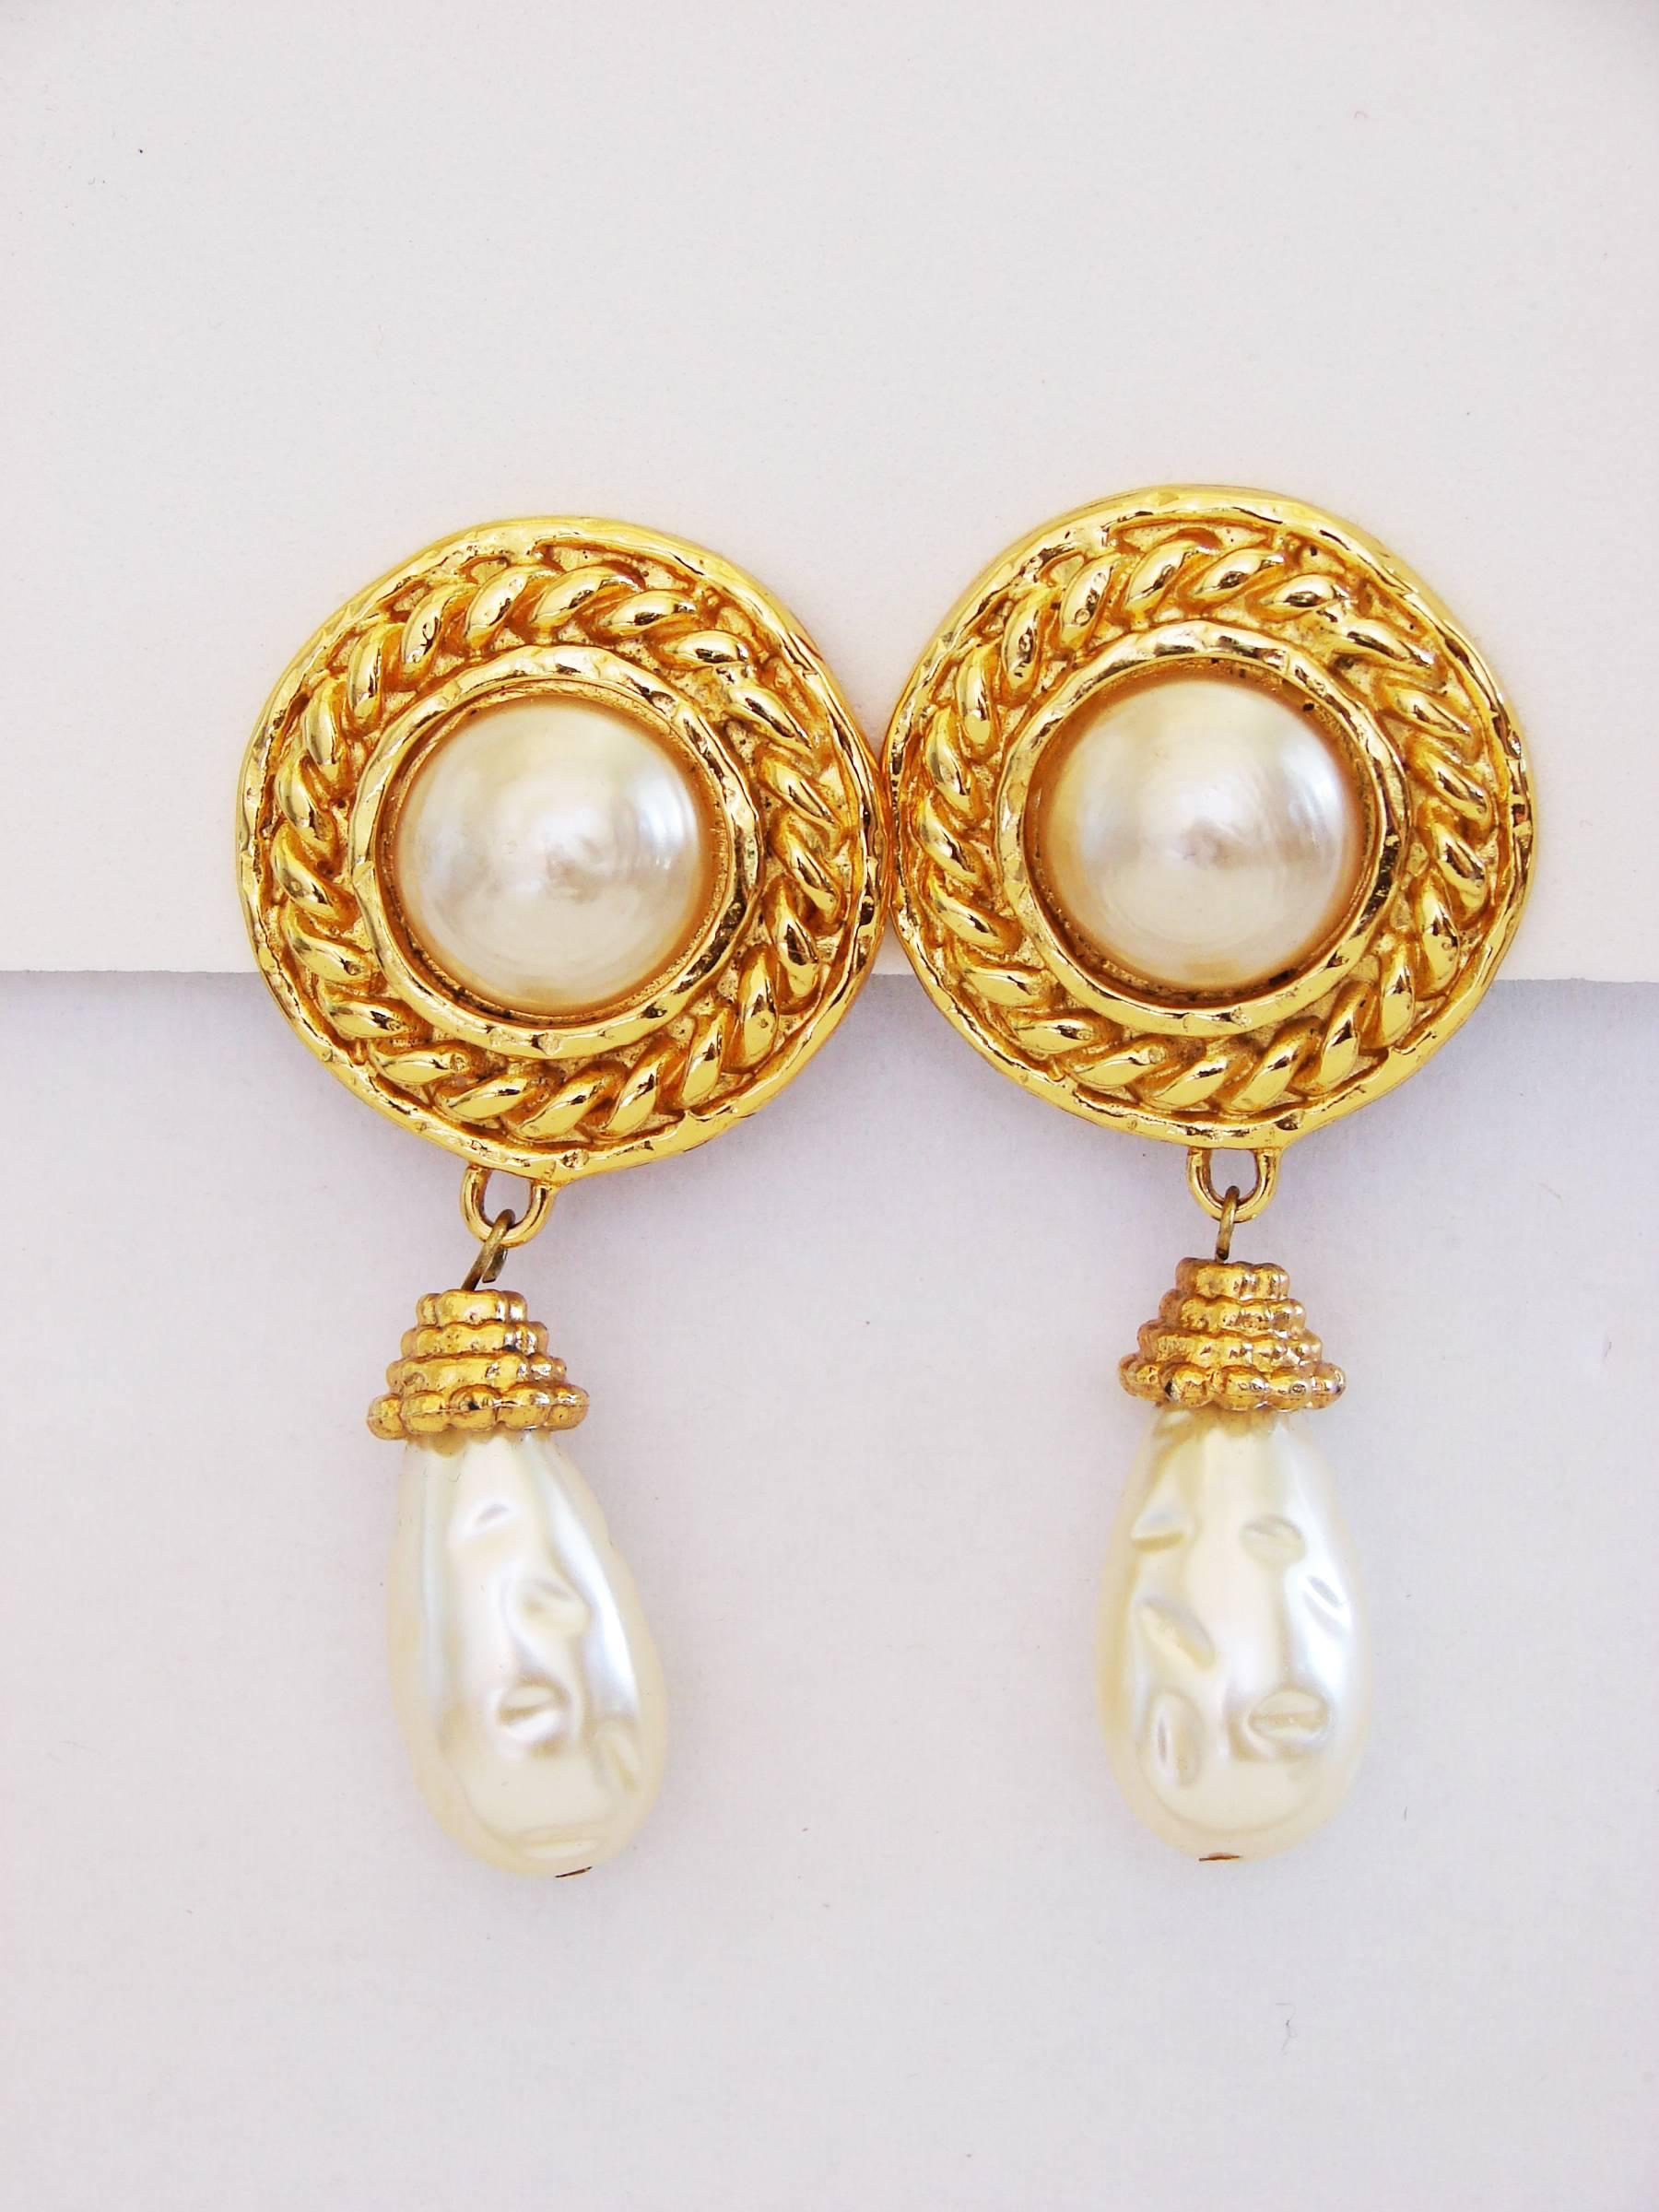 1970s earrings styles